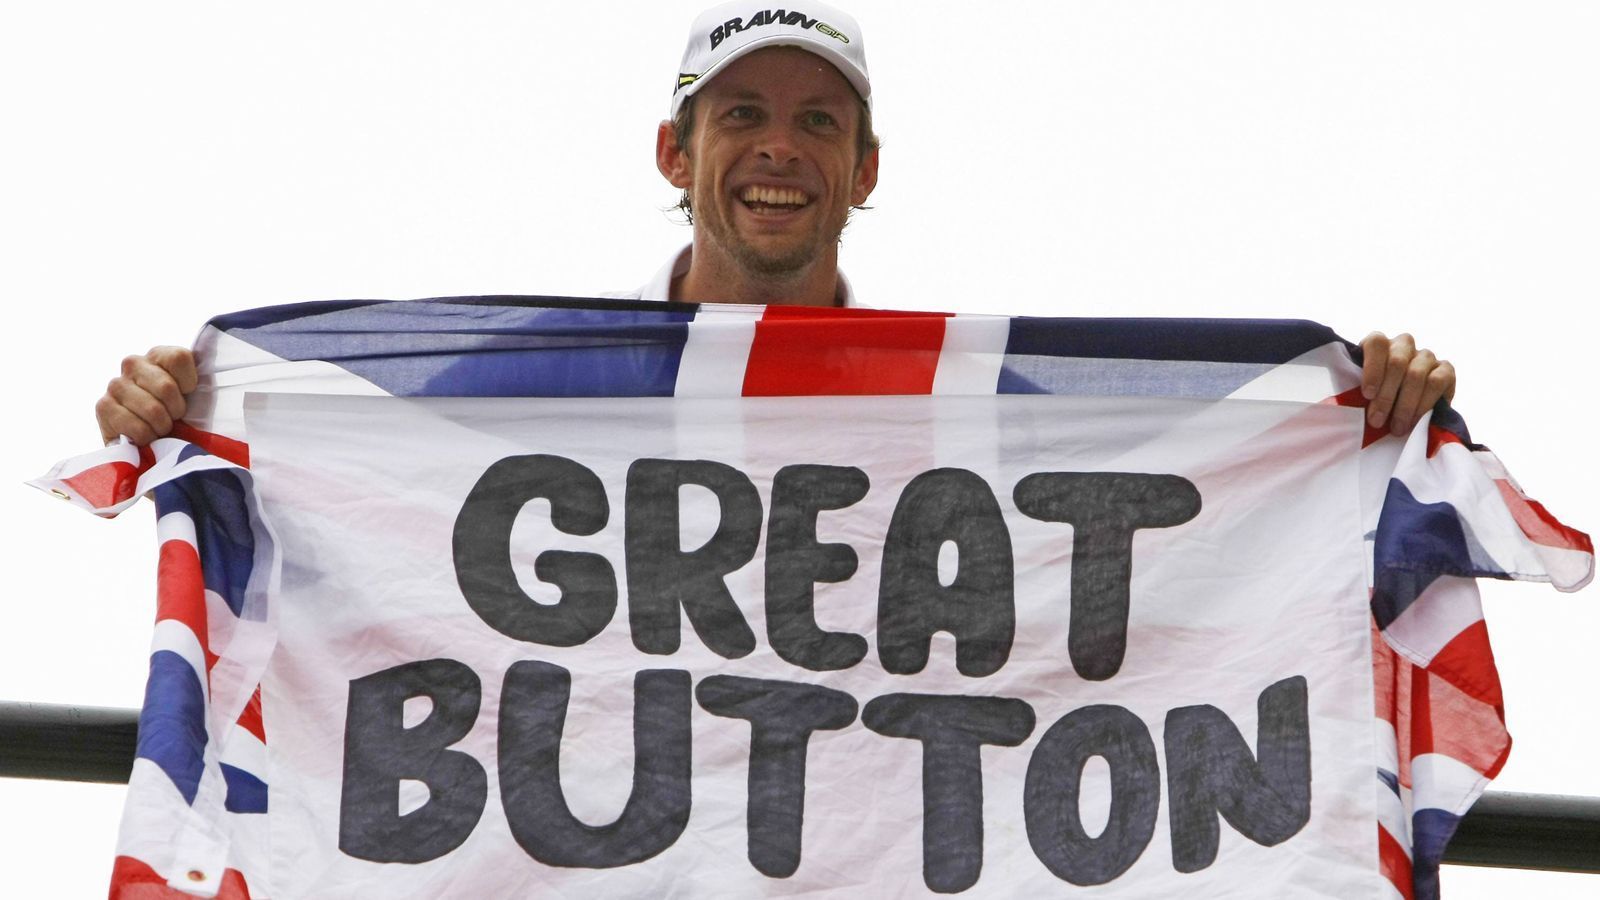 
                <strong>Jenson Button</strong><br>
                Mit Jenson Button mischt 2021 ein ehemaliger Formel-1-Weltmeister mit. Von 2000 bis 2016 war Button fester Bestandteil der Königsklasse. 2009 gewann der Engländer für das kleine Brawn-Team fast sensationell den WM-Titel. Insgesamt siegte er bei 15 seiner 306 Starts in der Königsklasse, ehe er anschließend neue Herausforderungen suchte.
              